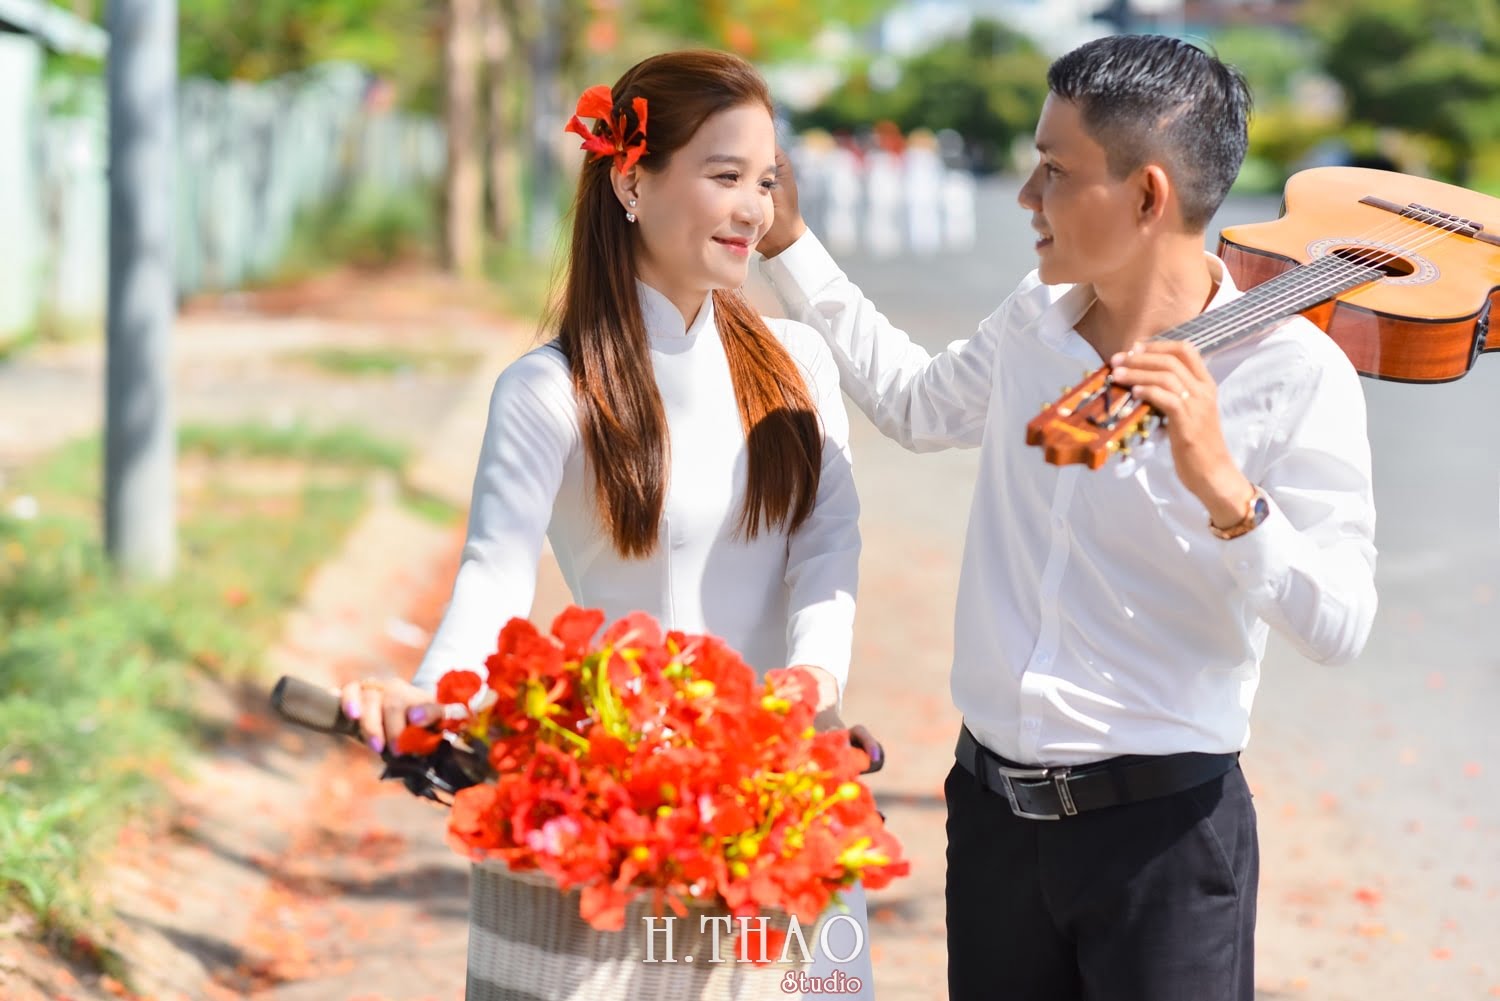 Anh hoa phuong 6 min - Tổng hợp concept chụp ảnh với hoa phượng tháng 5 đẹp – HThao Studio